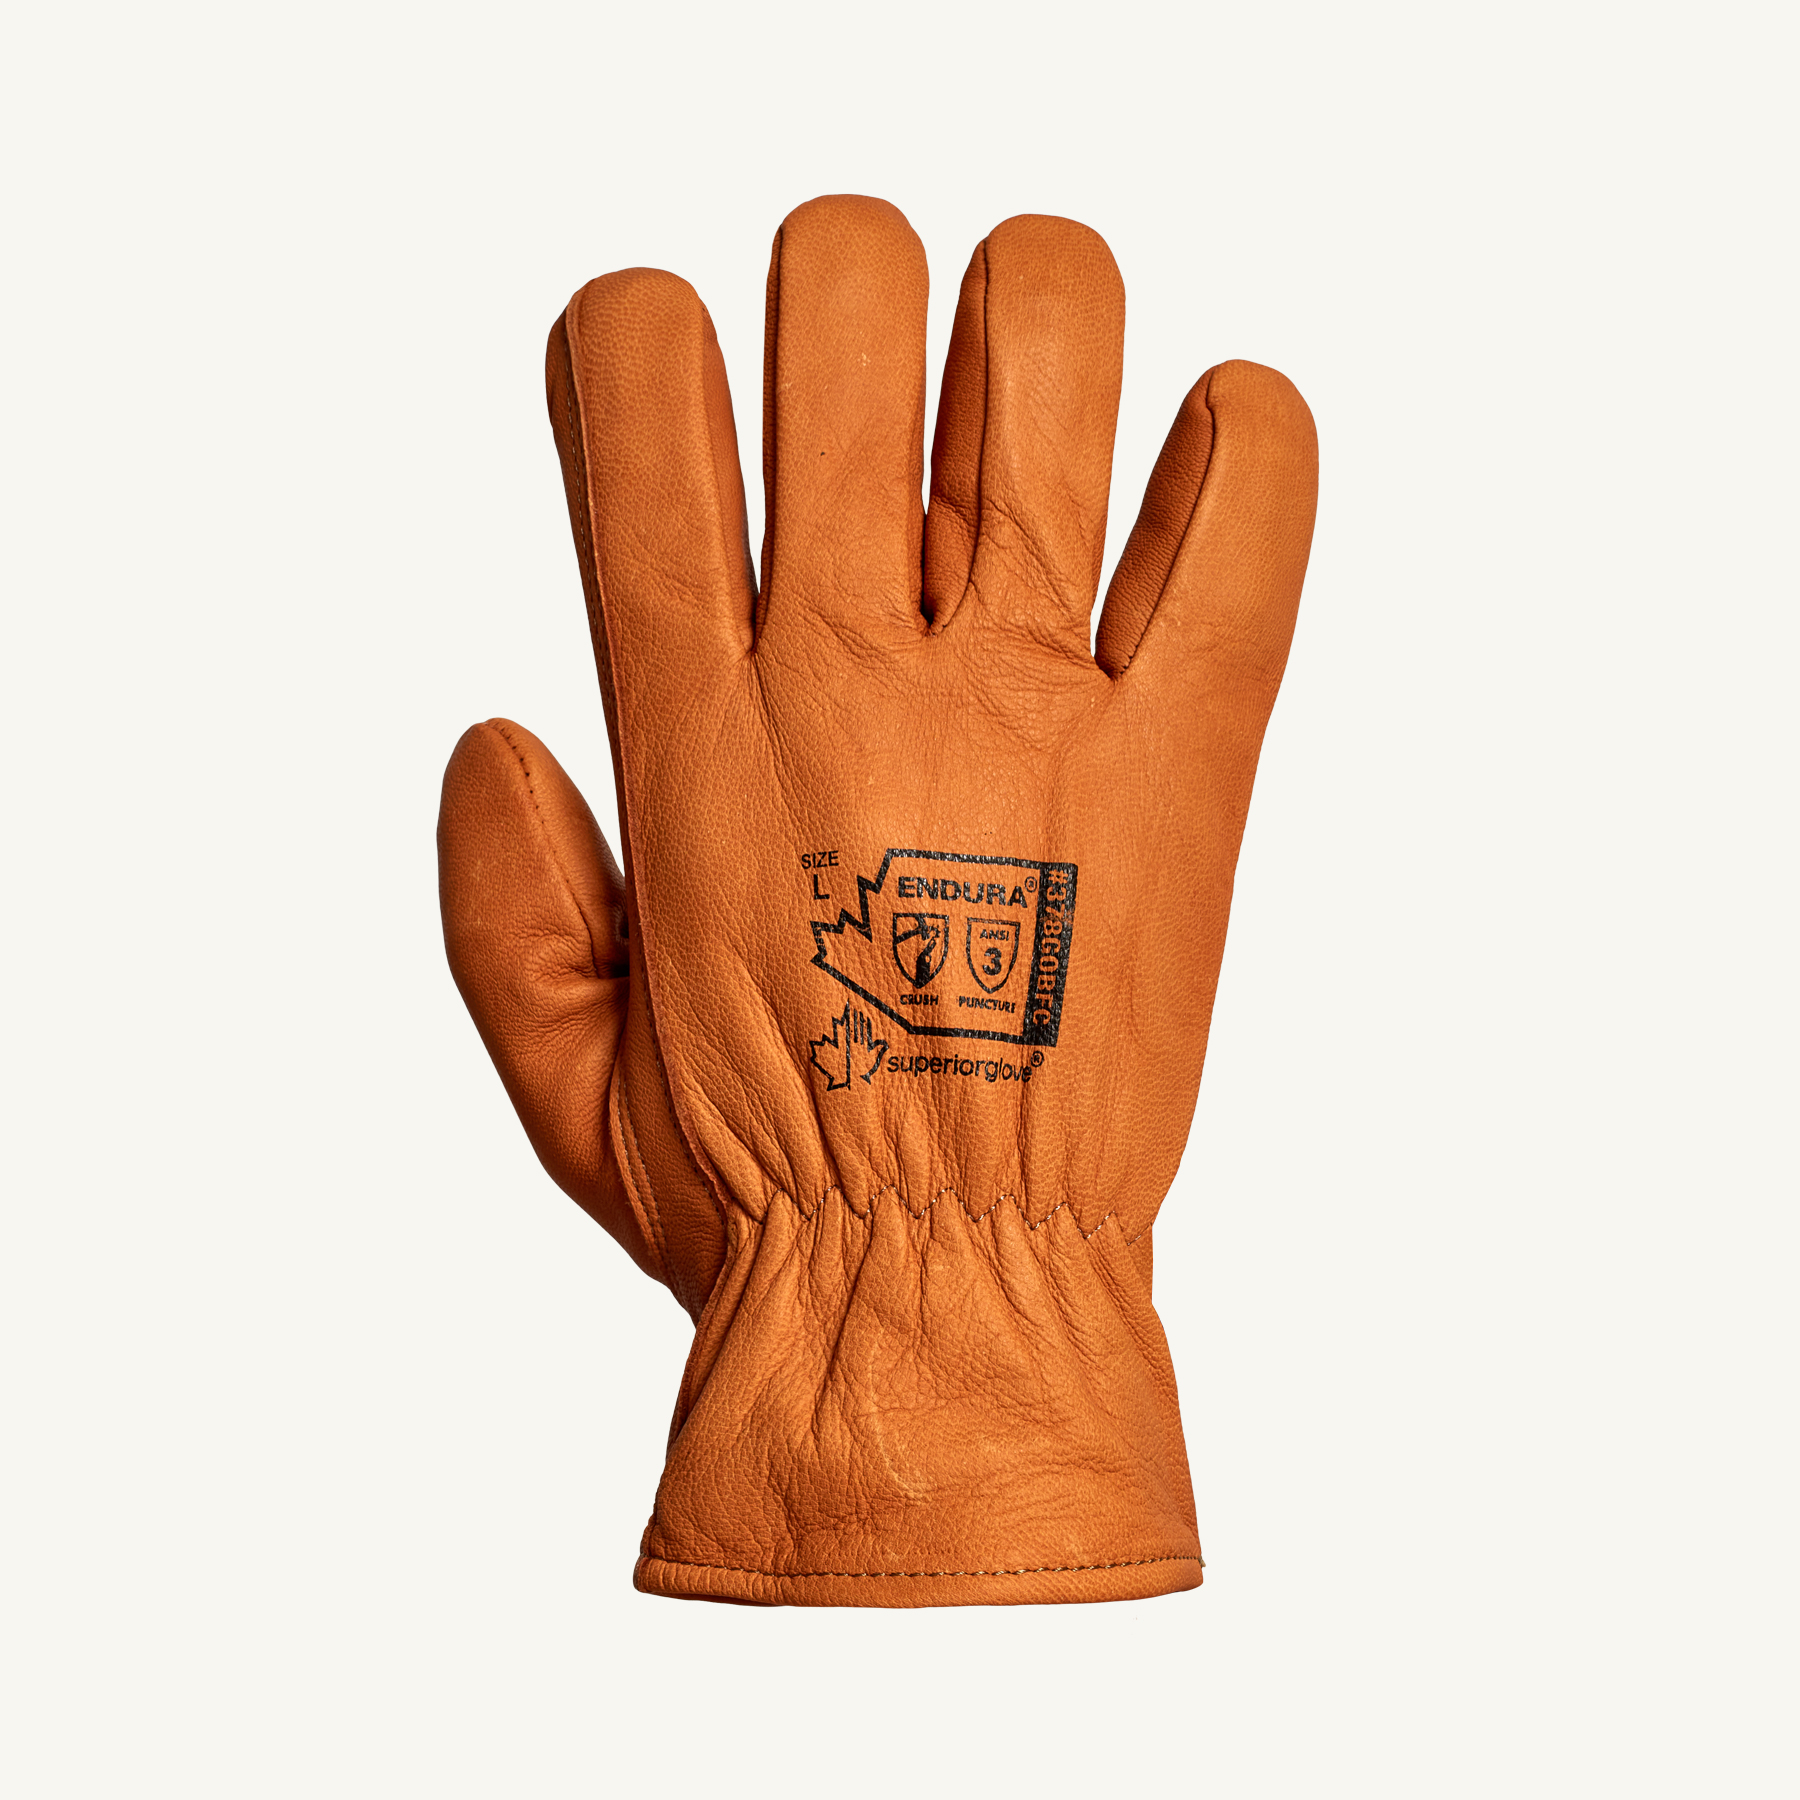 Superior Glove Cut-résistant à l'industrie alimentaire unique Gant Taille S